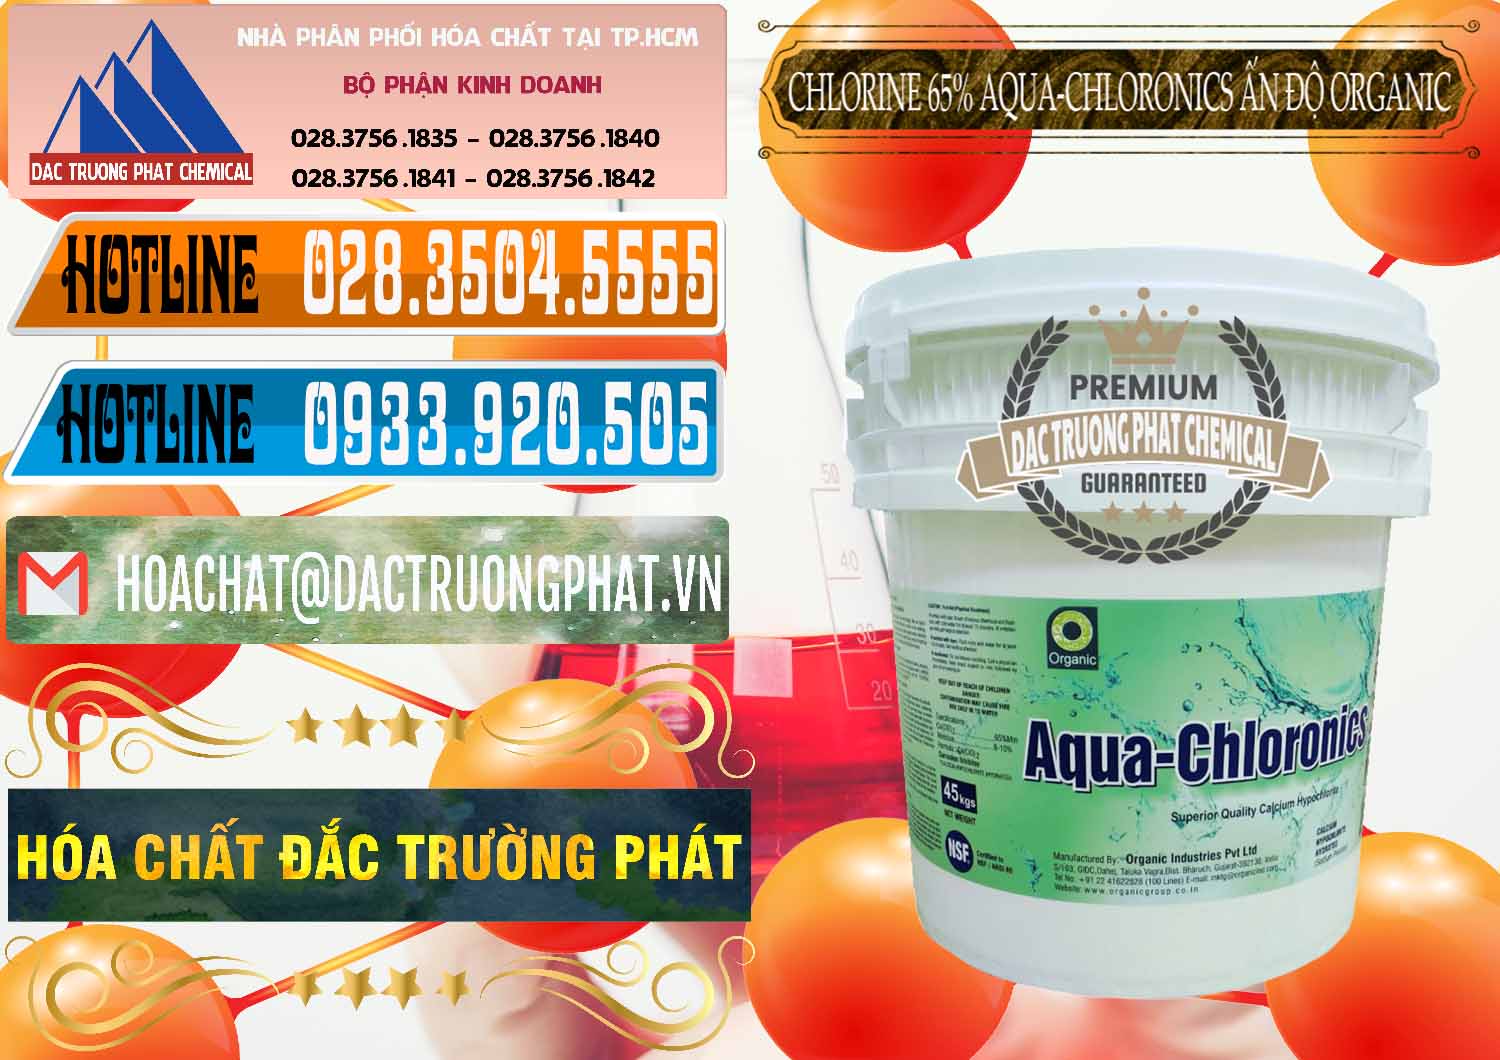 Đơn vị chuyên bán _ phân phối Chlorine – Clorin 65% Aqua-Chloronics Ấn Độ Organic India - 0210 - Công ty chuyên cung cấp _ nhập khẩu hóa chất tại TP.HCM - stmp.net